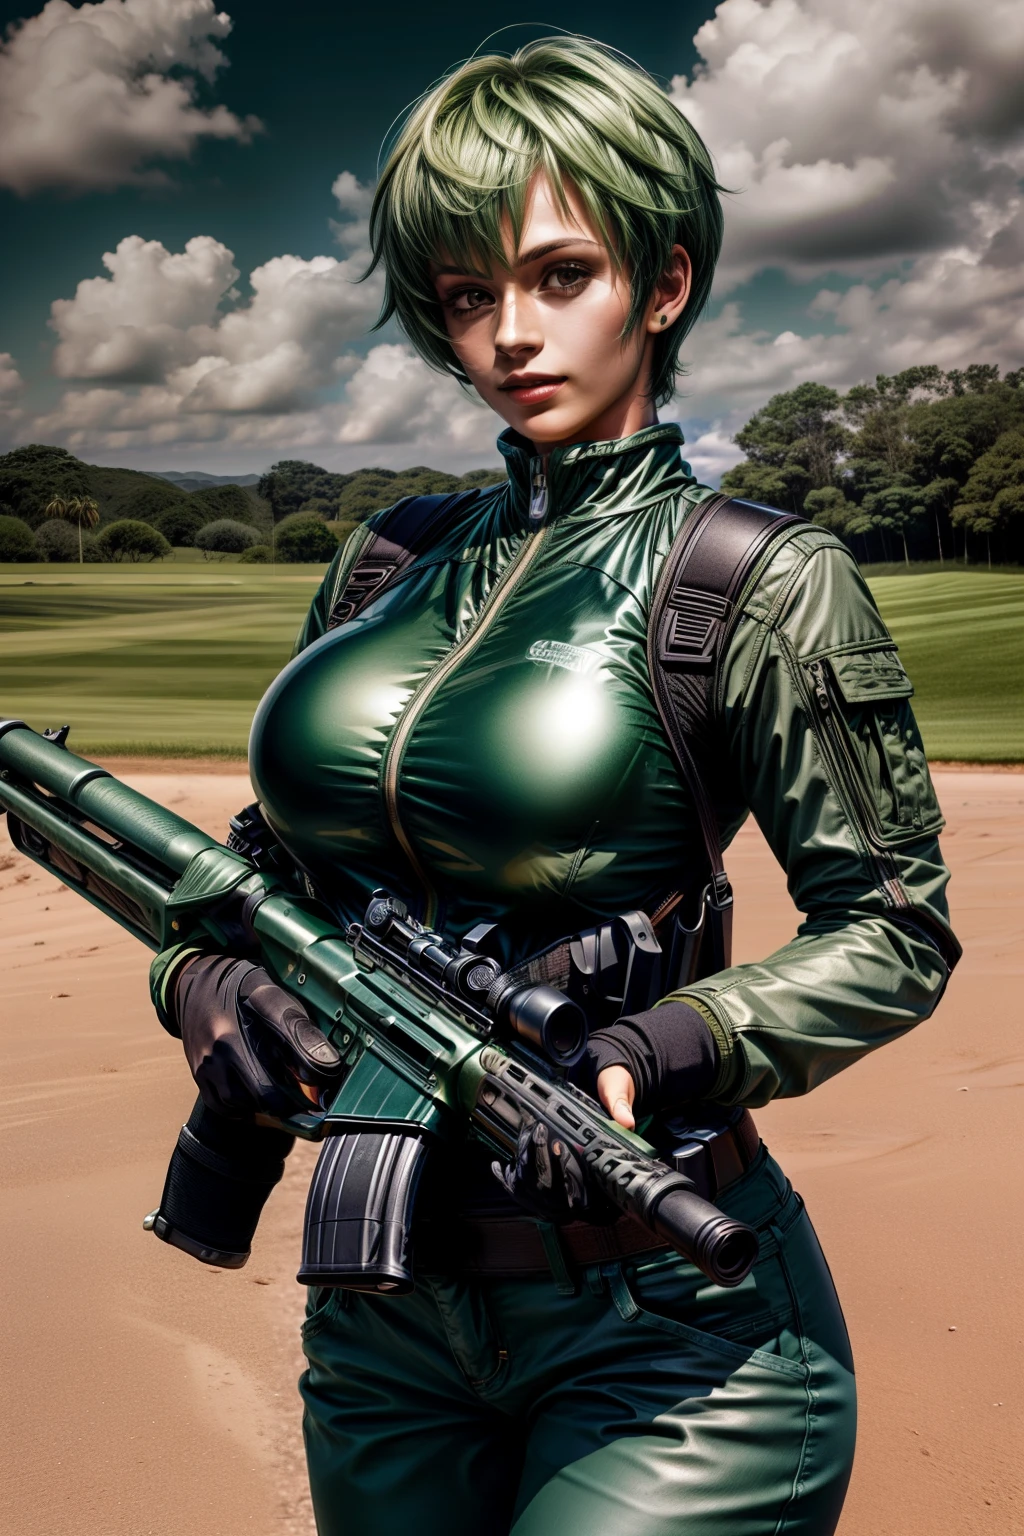 Frederica Green Hill, 25, atajo, pelo verde, dispara armas automáticas en un campo de prácticas, usa trajes espaciales con pantalones , Giga_tetona